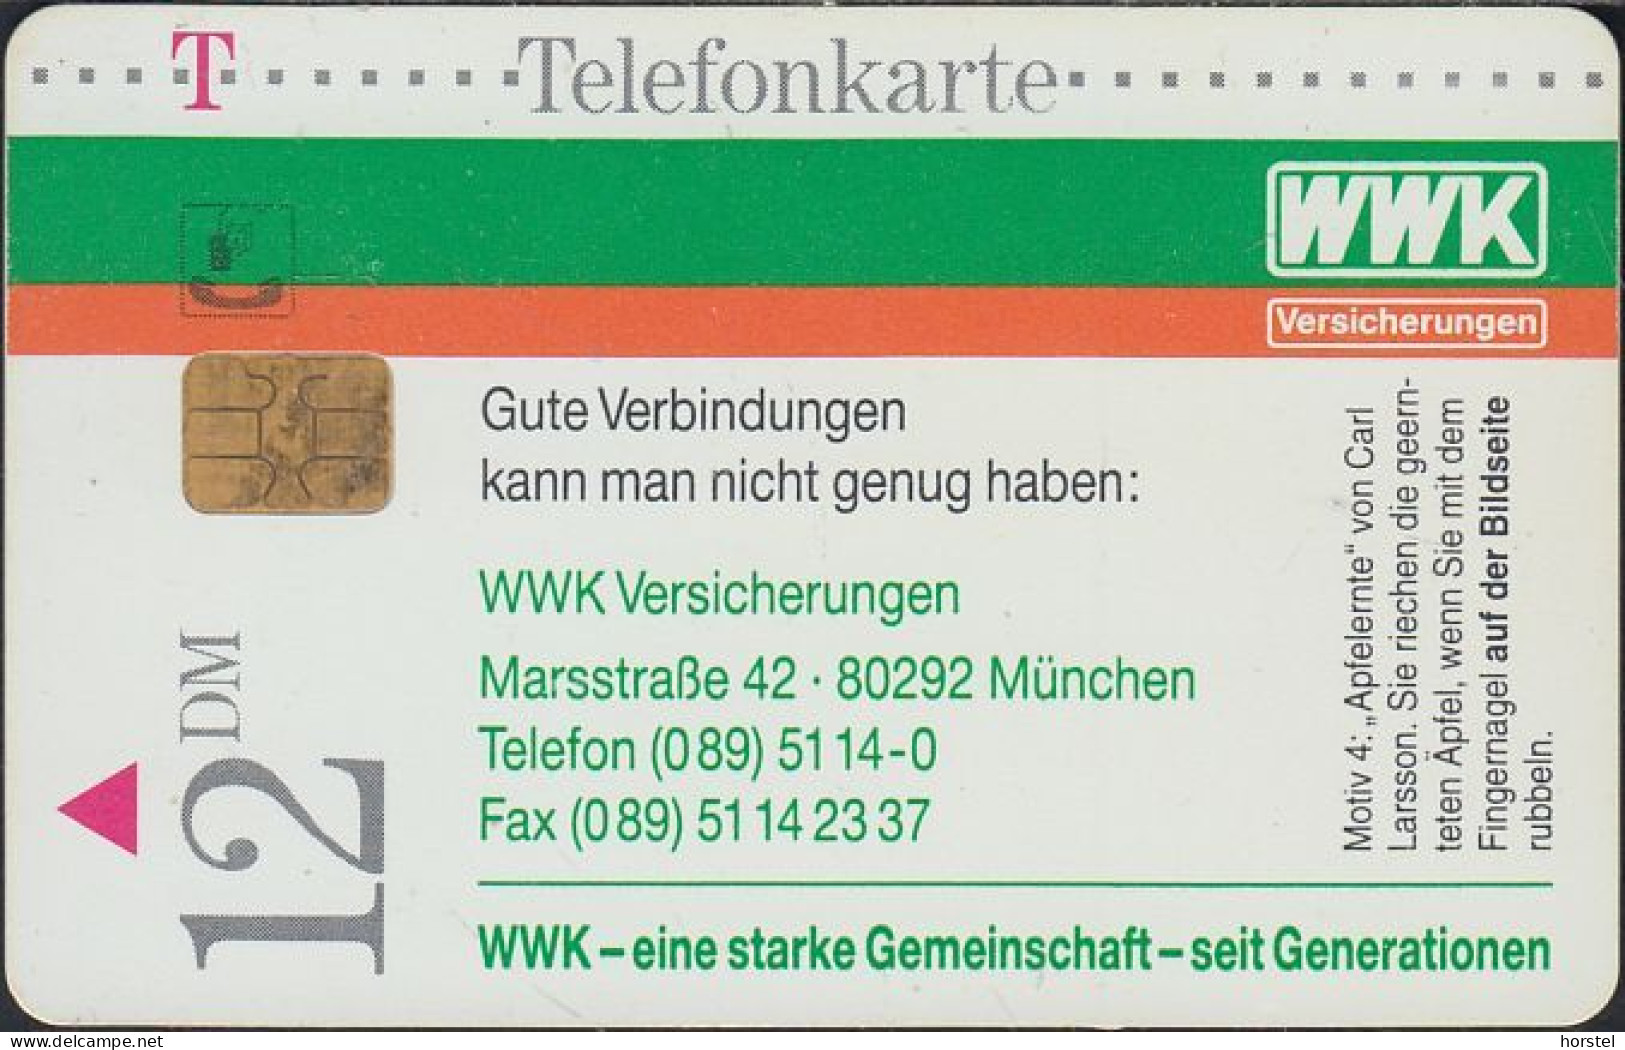 GERMANY S03/96 - WWK - Motiv 4 Art - Carl Larsson "Apfelernte" - Gemälde - Nature - S-Series: Schalterserie Mit Fremdfirmenreklame